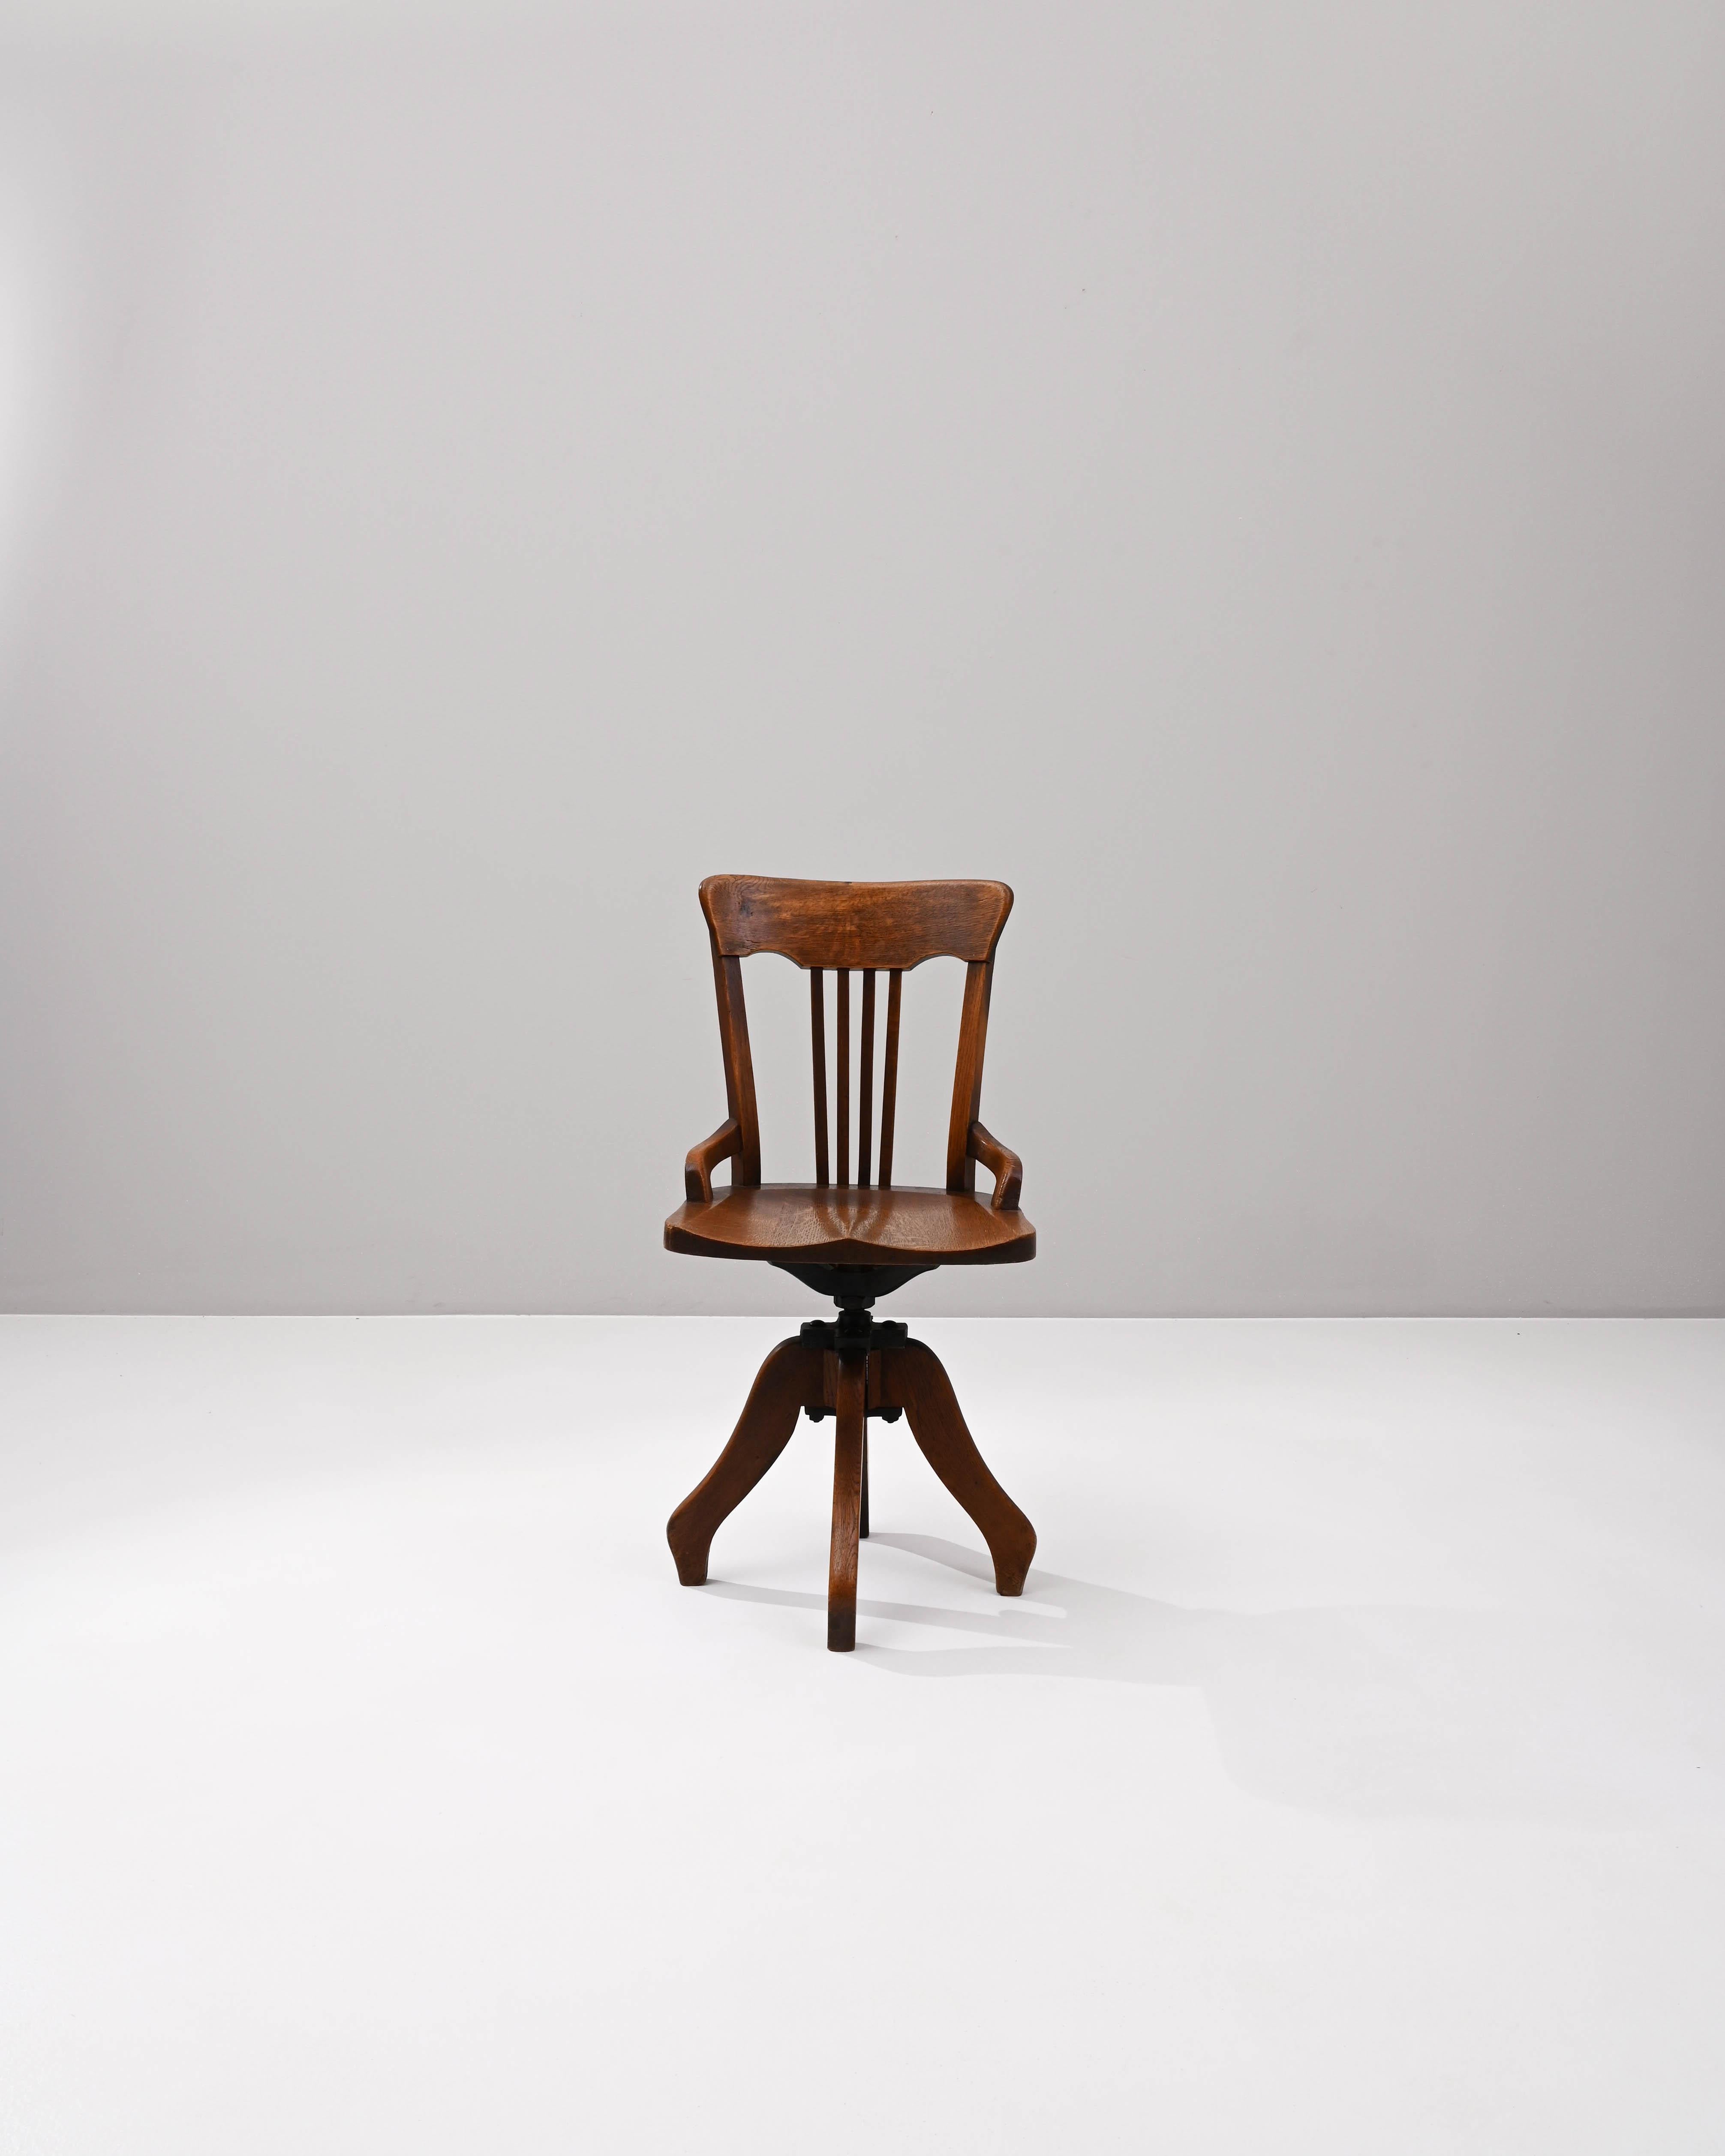 Erleben Sie den Charme des frühen 20. Jahrhunderts mit diesem französischen Holzdrehstuhl - eine reizvolle Verbindung von Funktionalität und klassischem Design. Der Stuhl lässt sich mühelos drehen und bietet so ein dynamisches Sitzerlebnis. Die